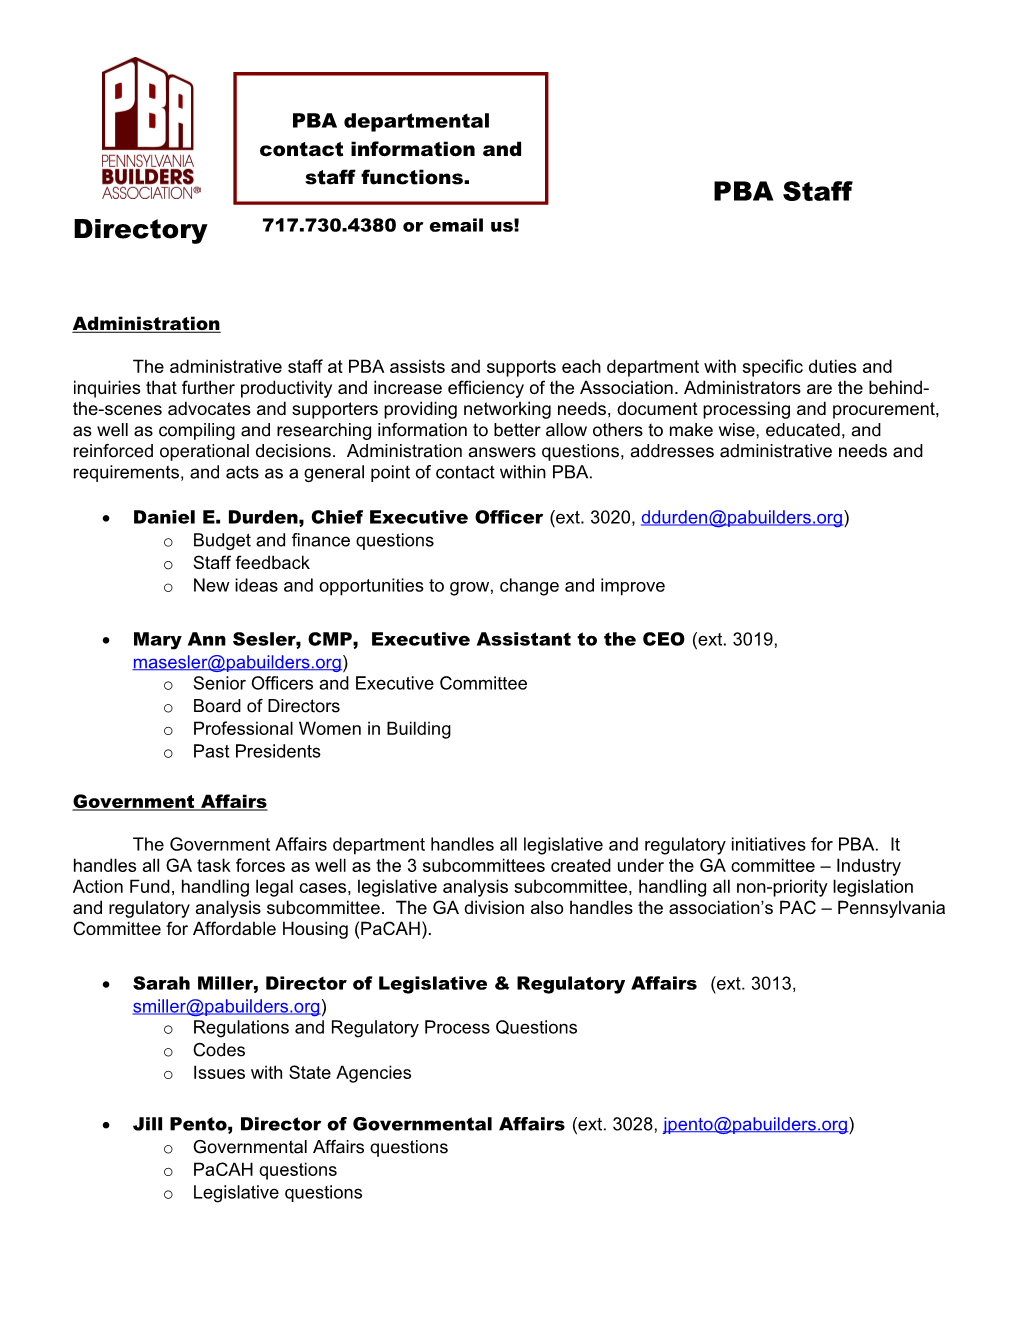 PBA Department Descriptions